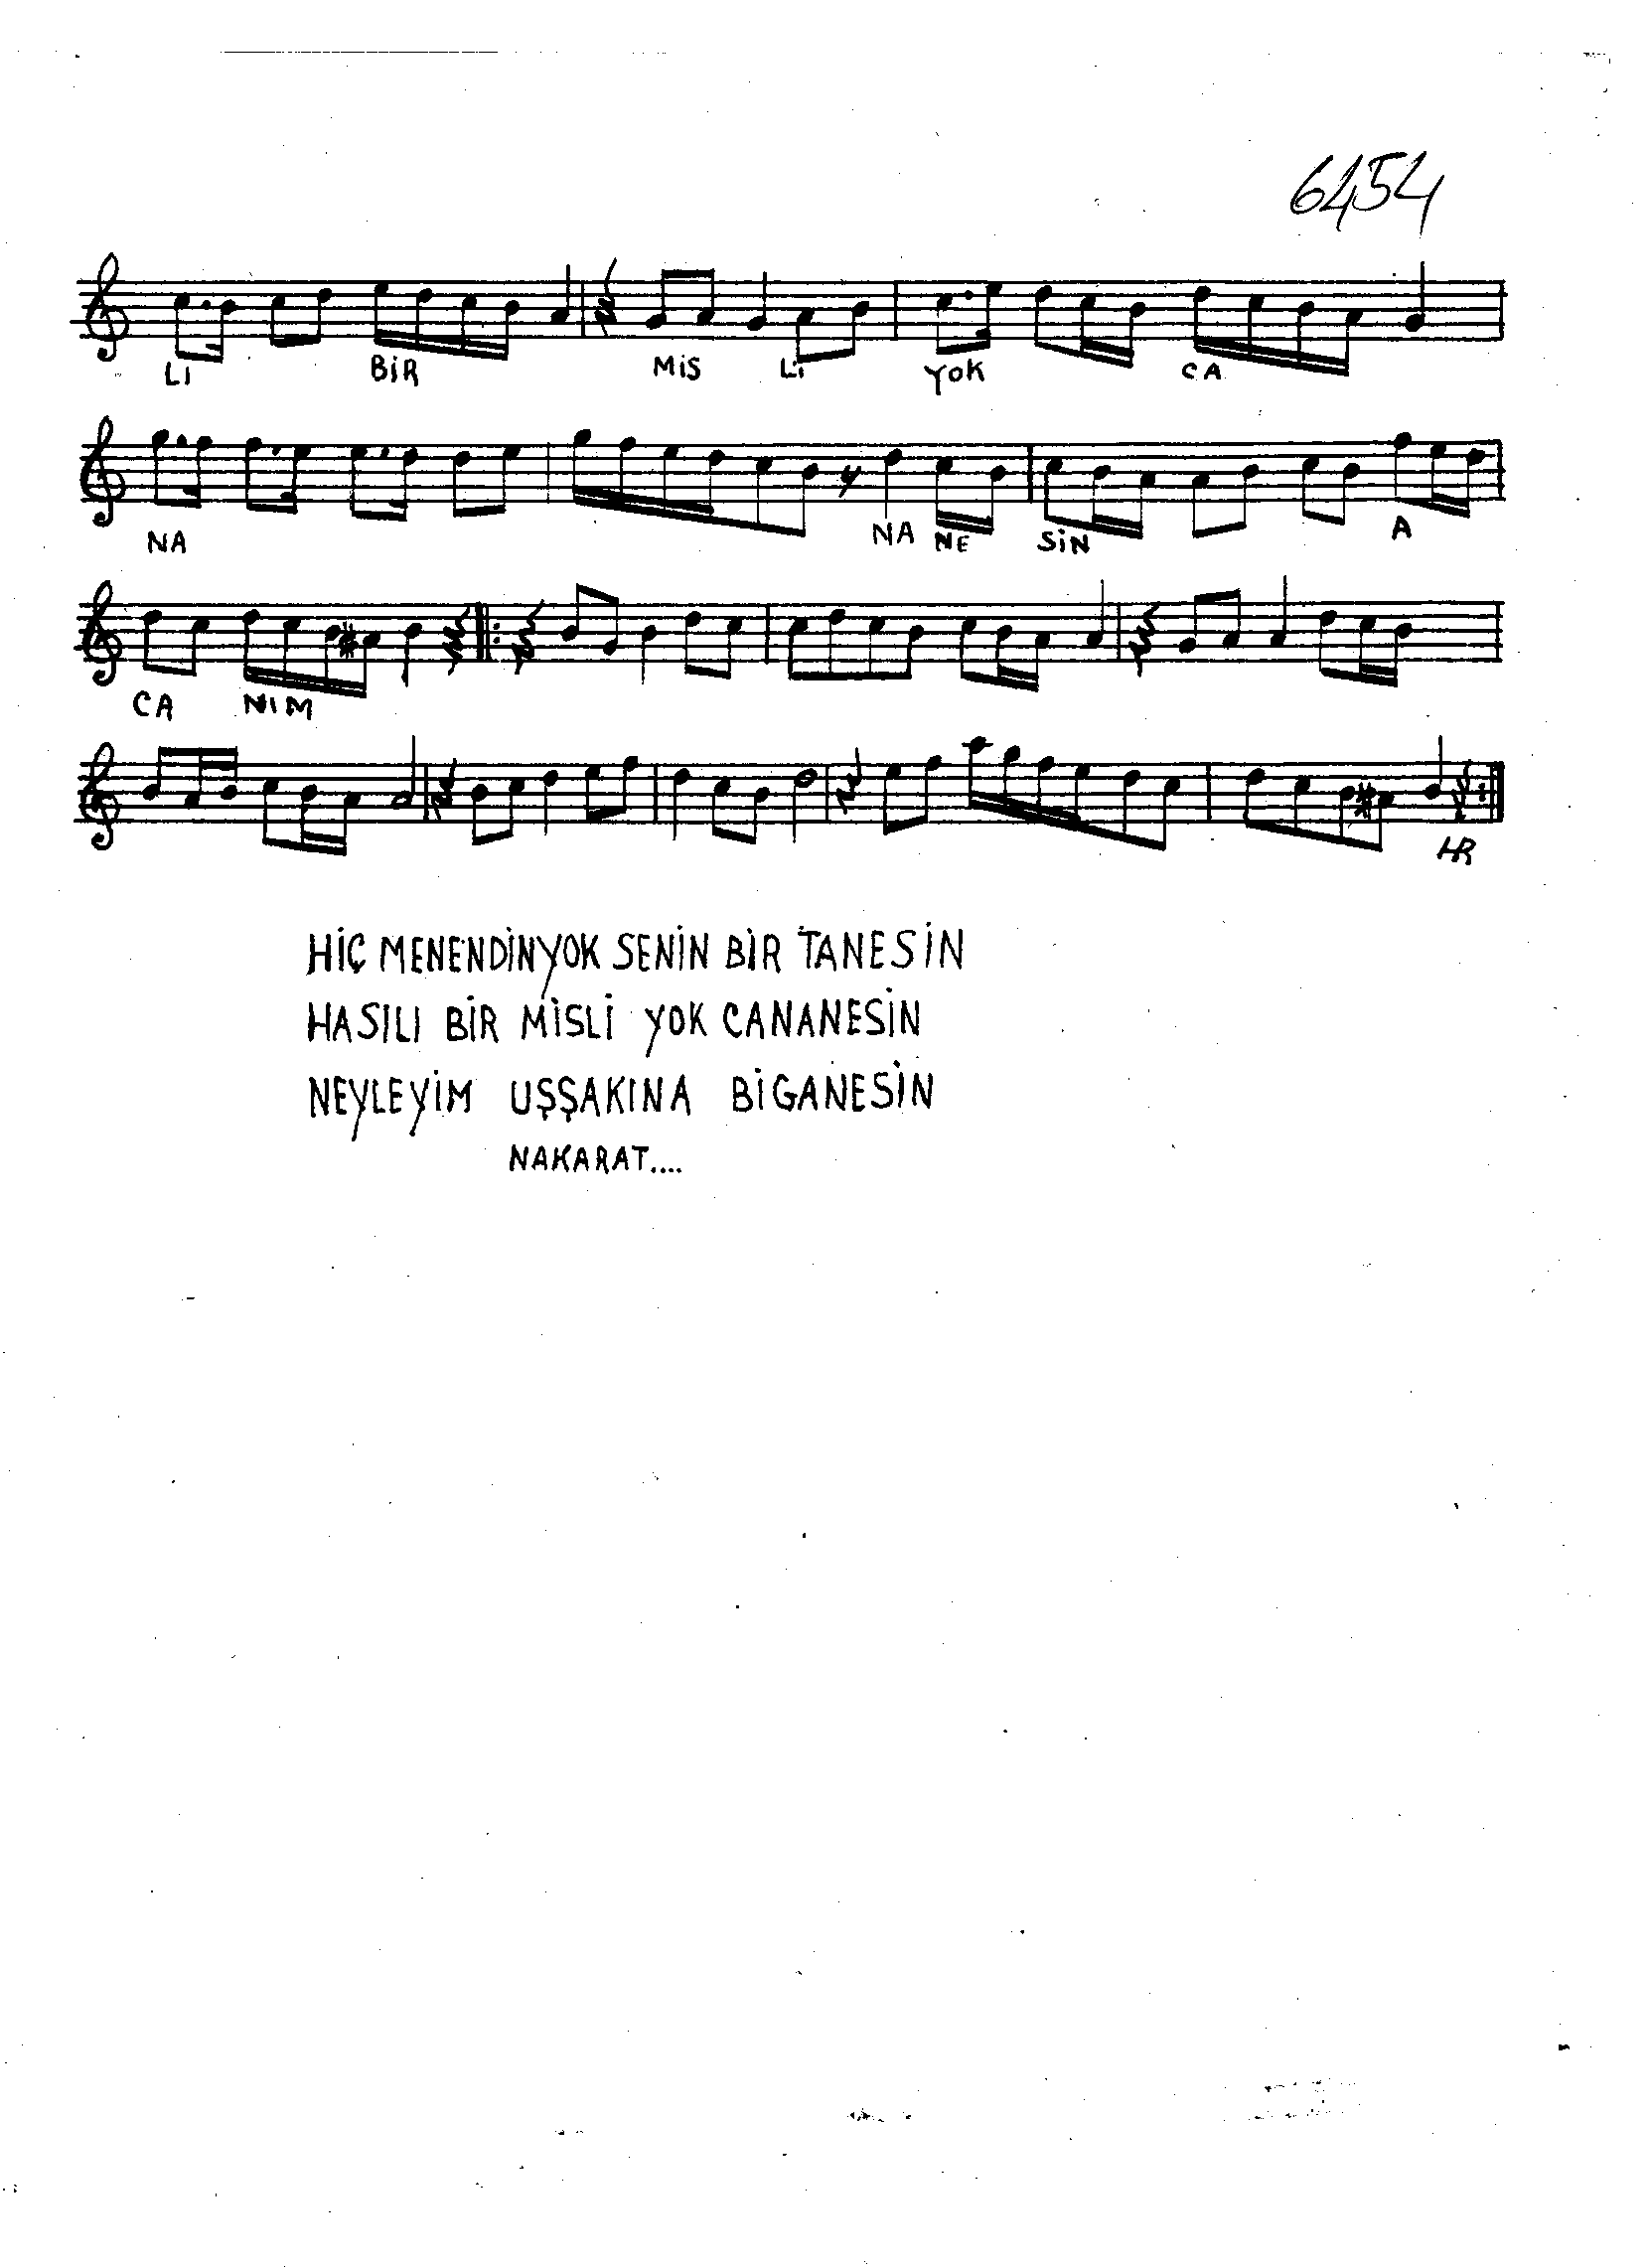 Mâye - Şarkı - Şâkir Ağa - Sayfa 2